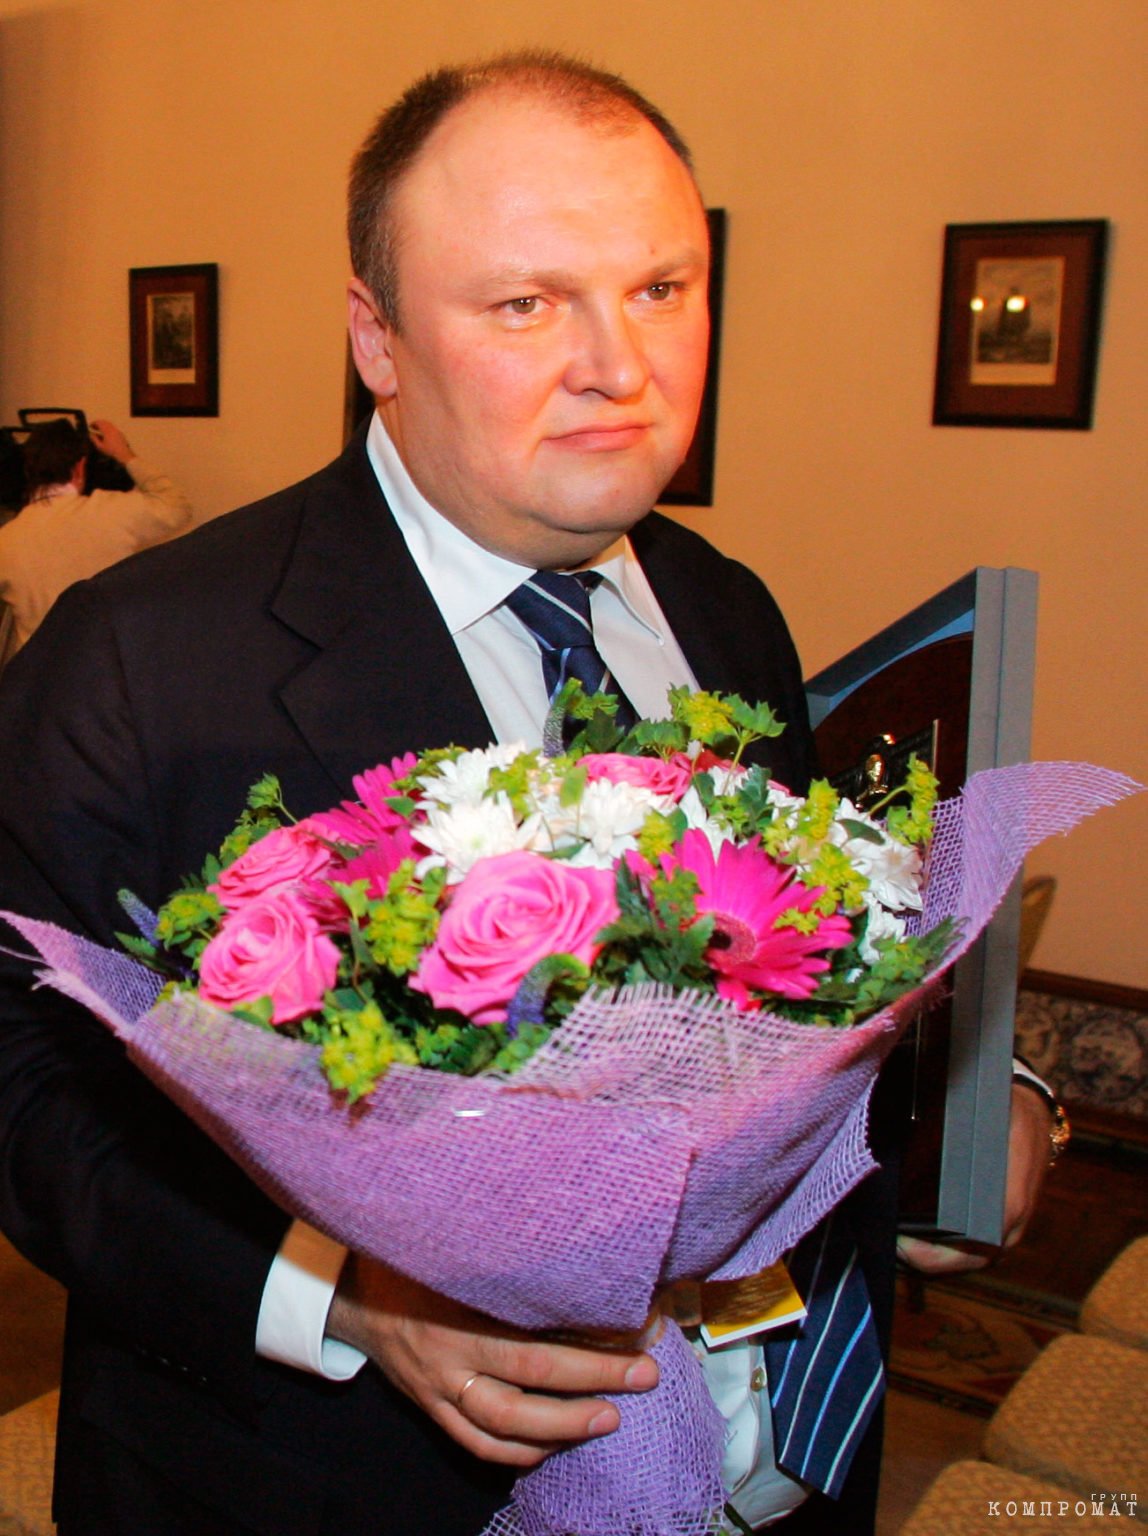 Герман Горбунцов на церемонии вручения ежегодной международной премии «Персона года — 2007